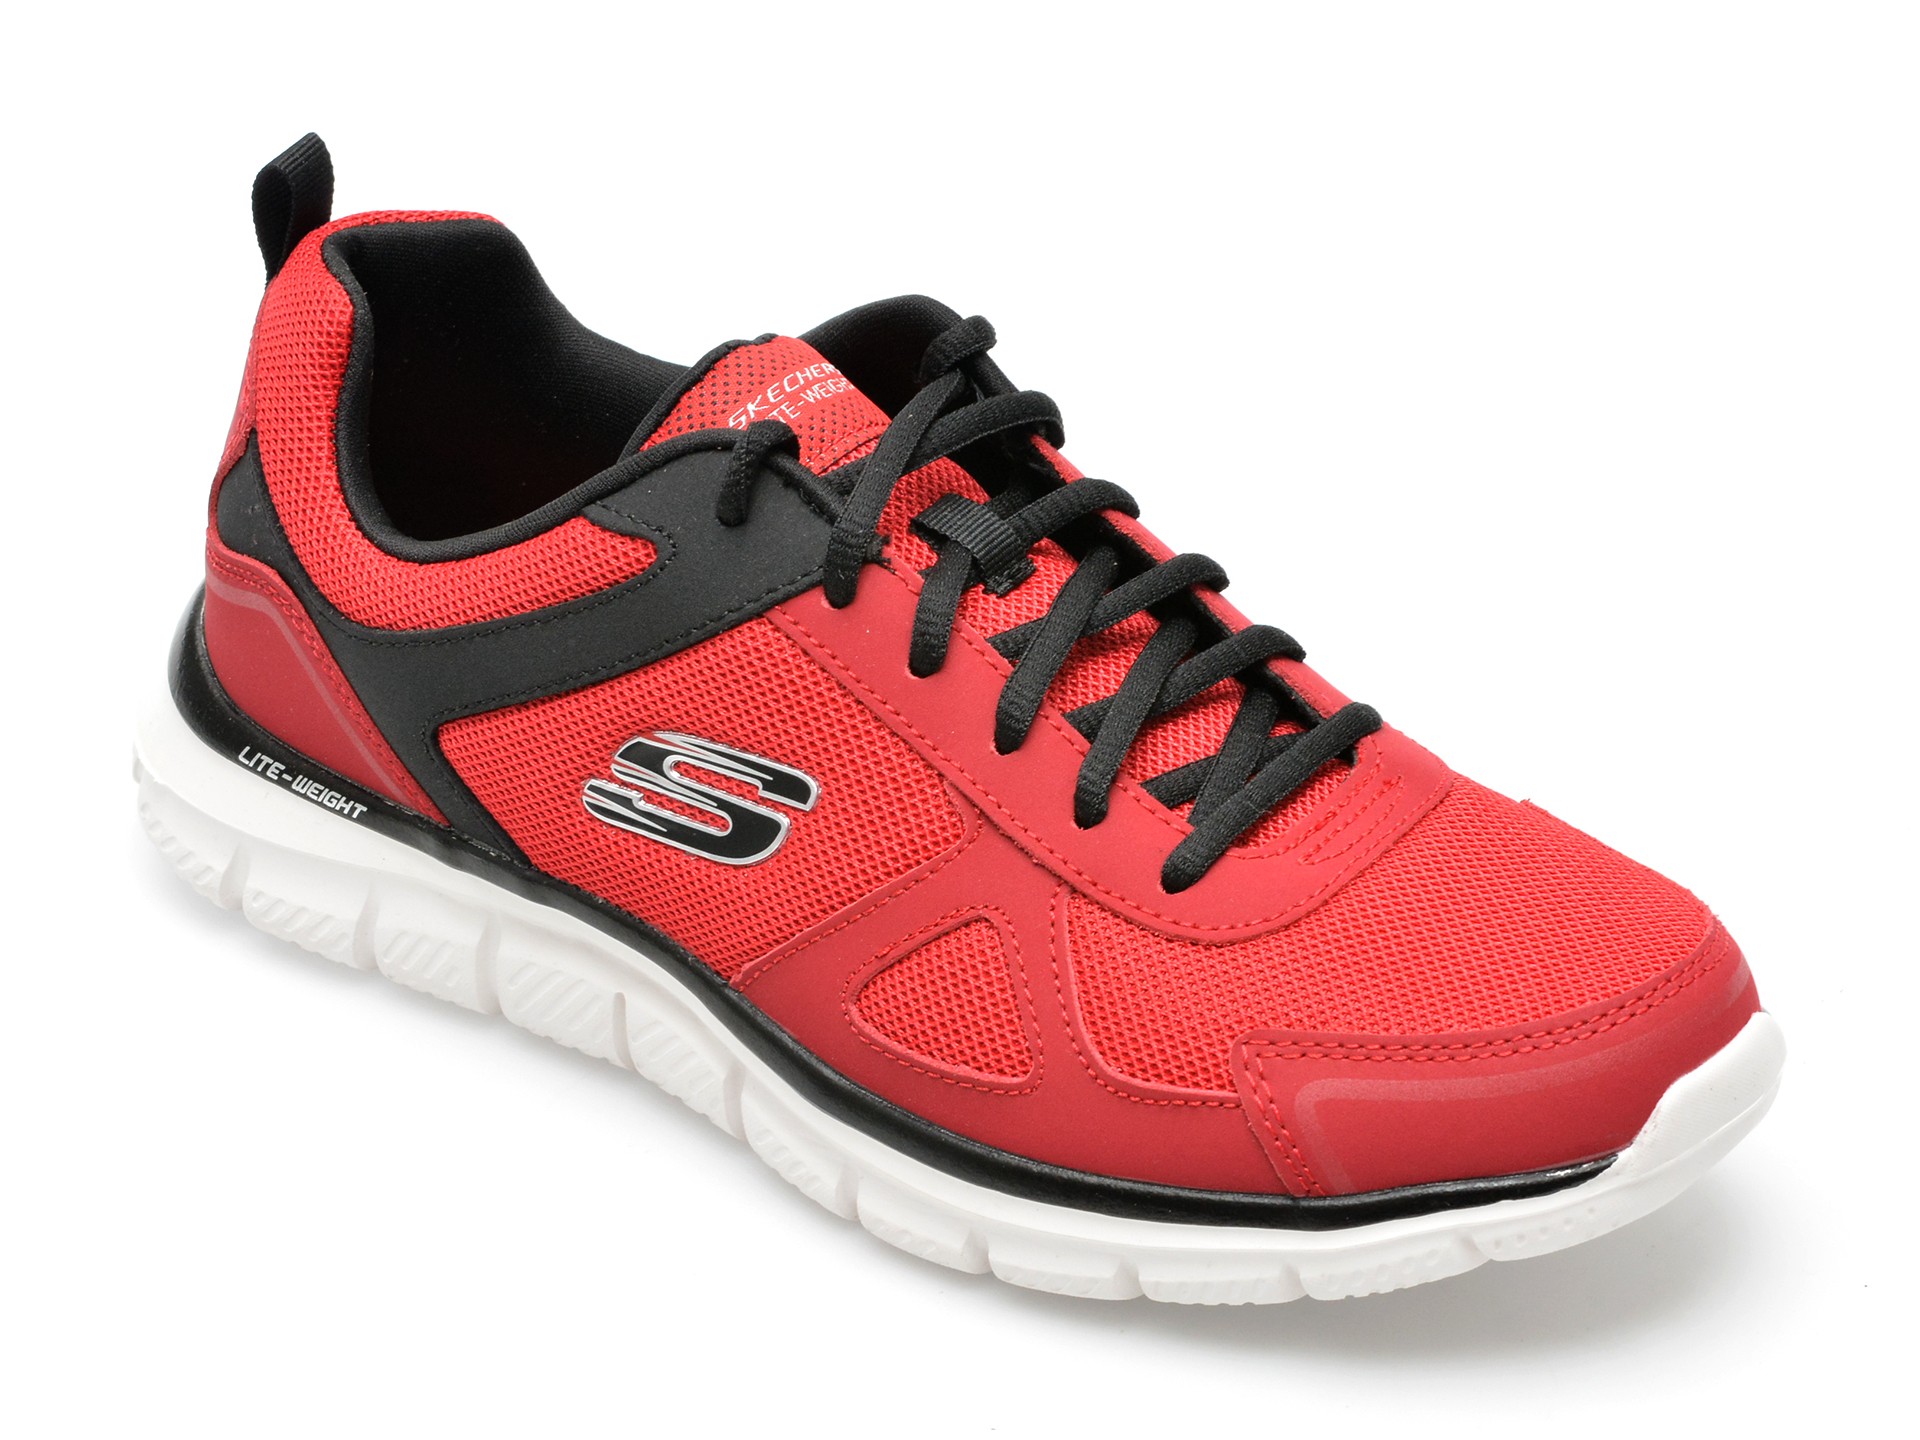 Pantofi sport SKECHERS rosii, TRACK, din material textil /barbati/pantofi